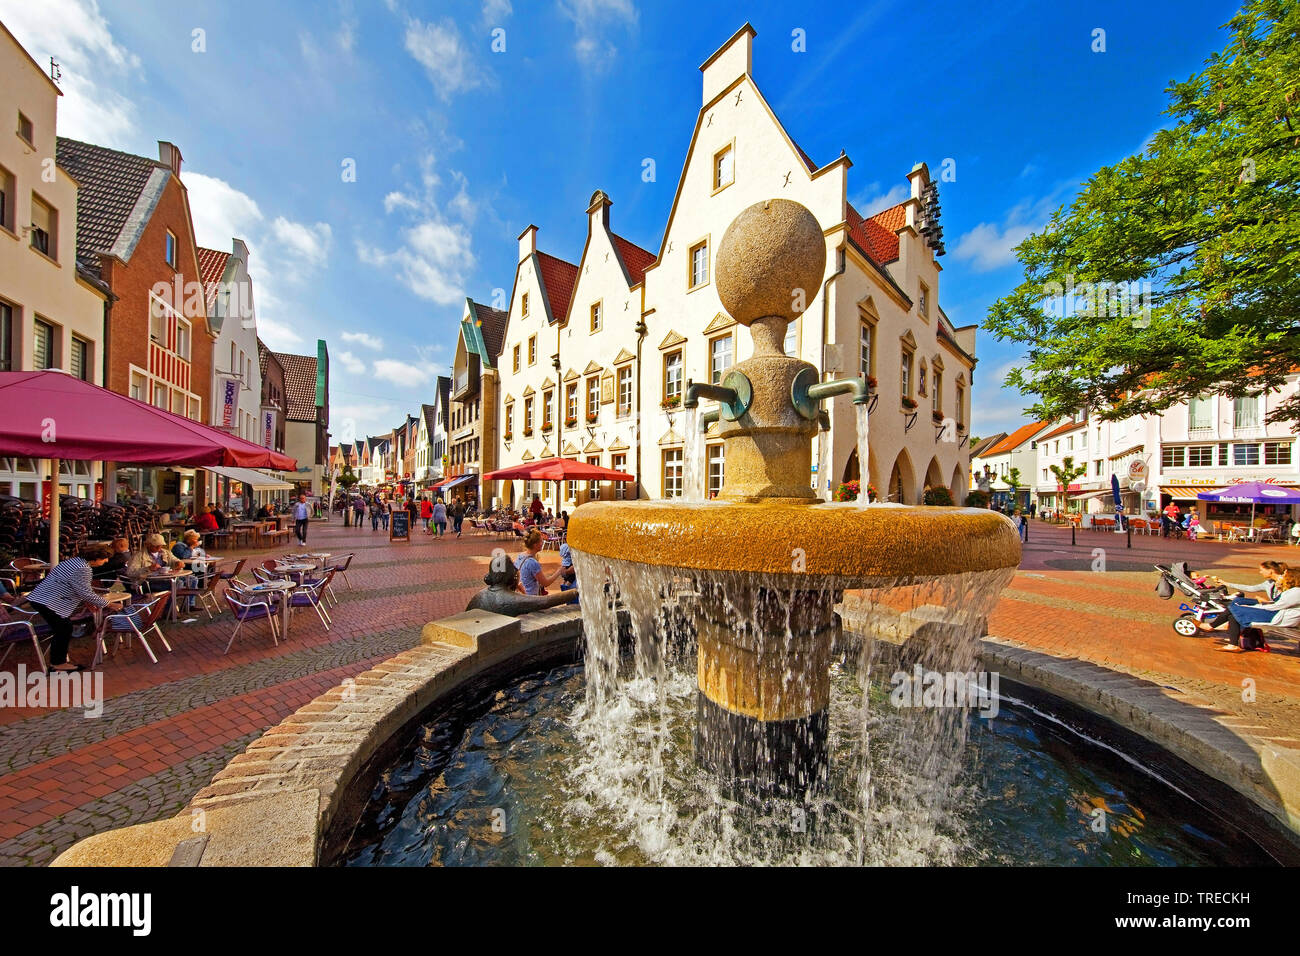 Olt Stadt mit Marktbrunnen und Altes Rathaus, Deutschland, Nordrhein-Westfalen, Haltern am See Stockfoto